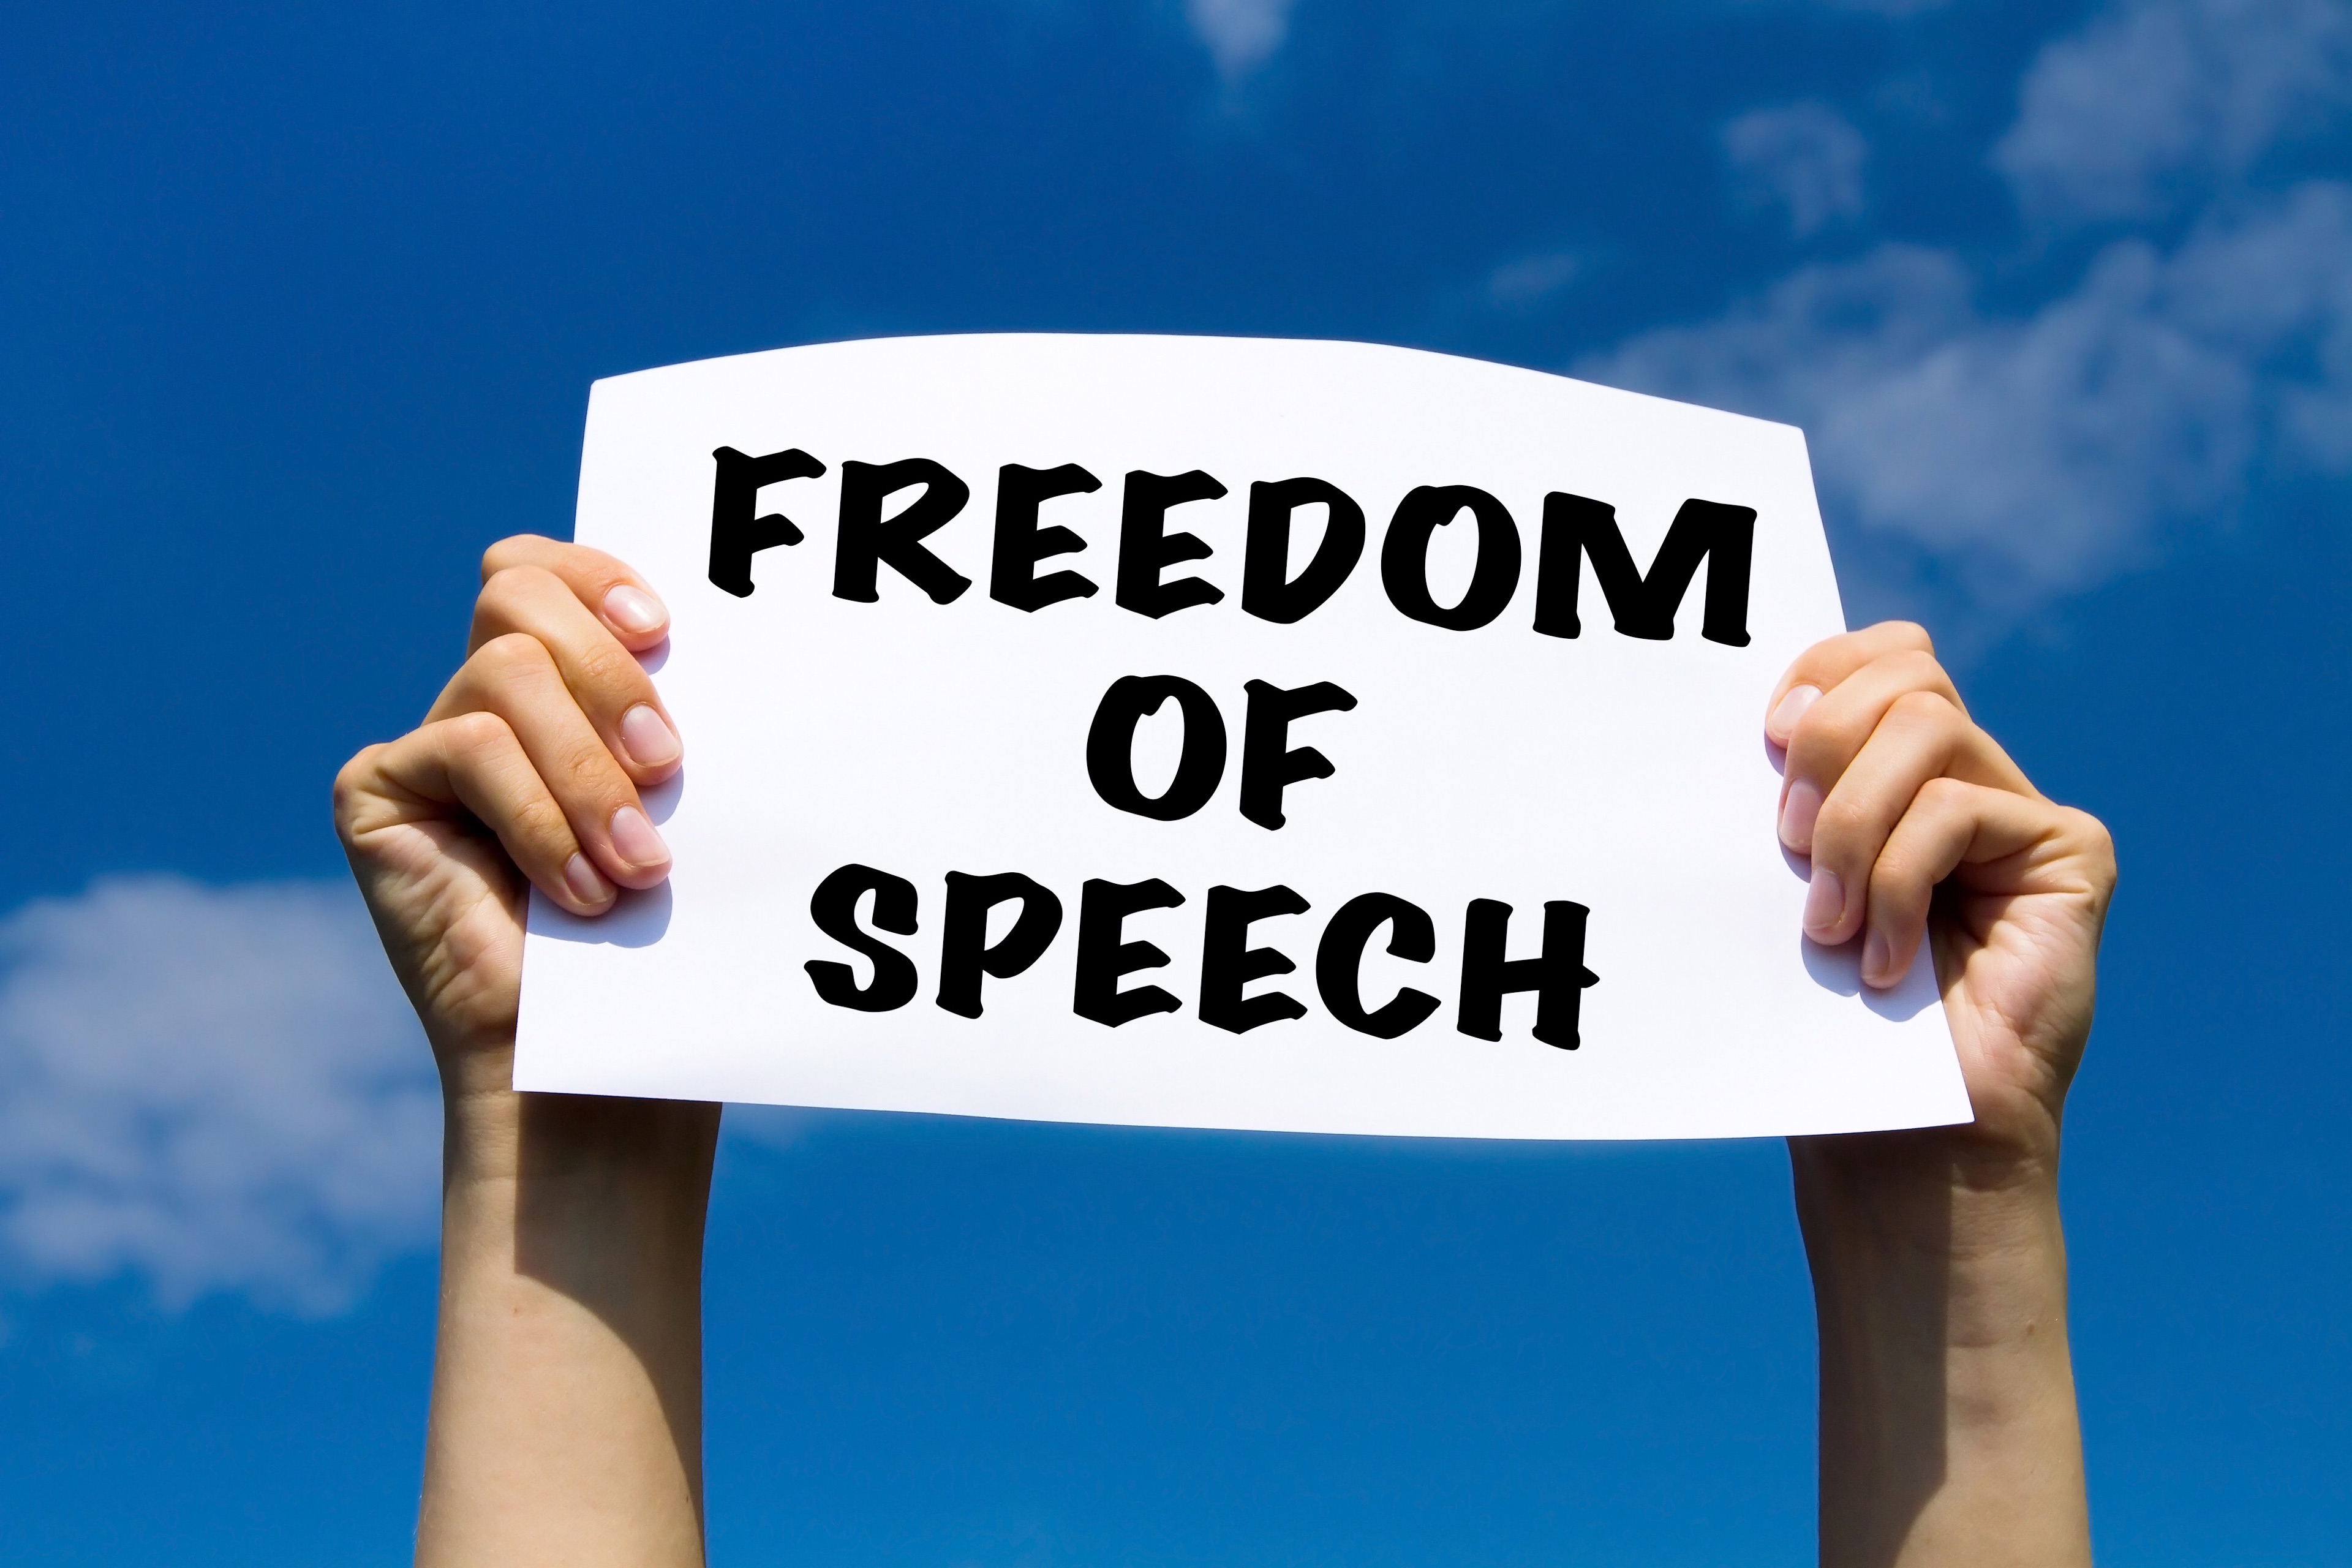 Right freedom. Свобода слова. Freedom of Speech. Свобода мнения. Свобода мысли и слова.